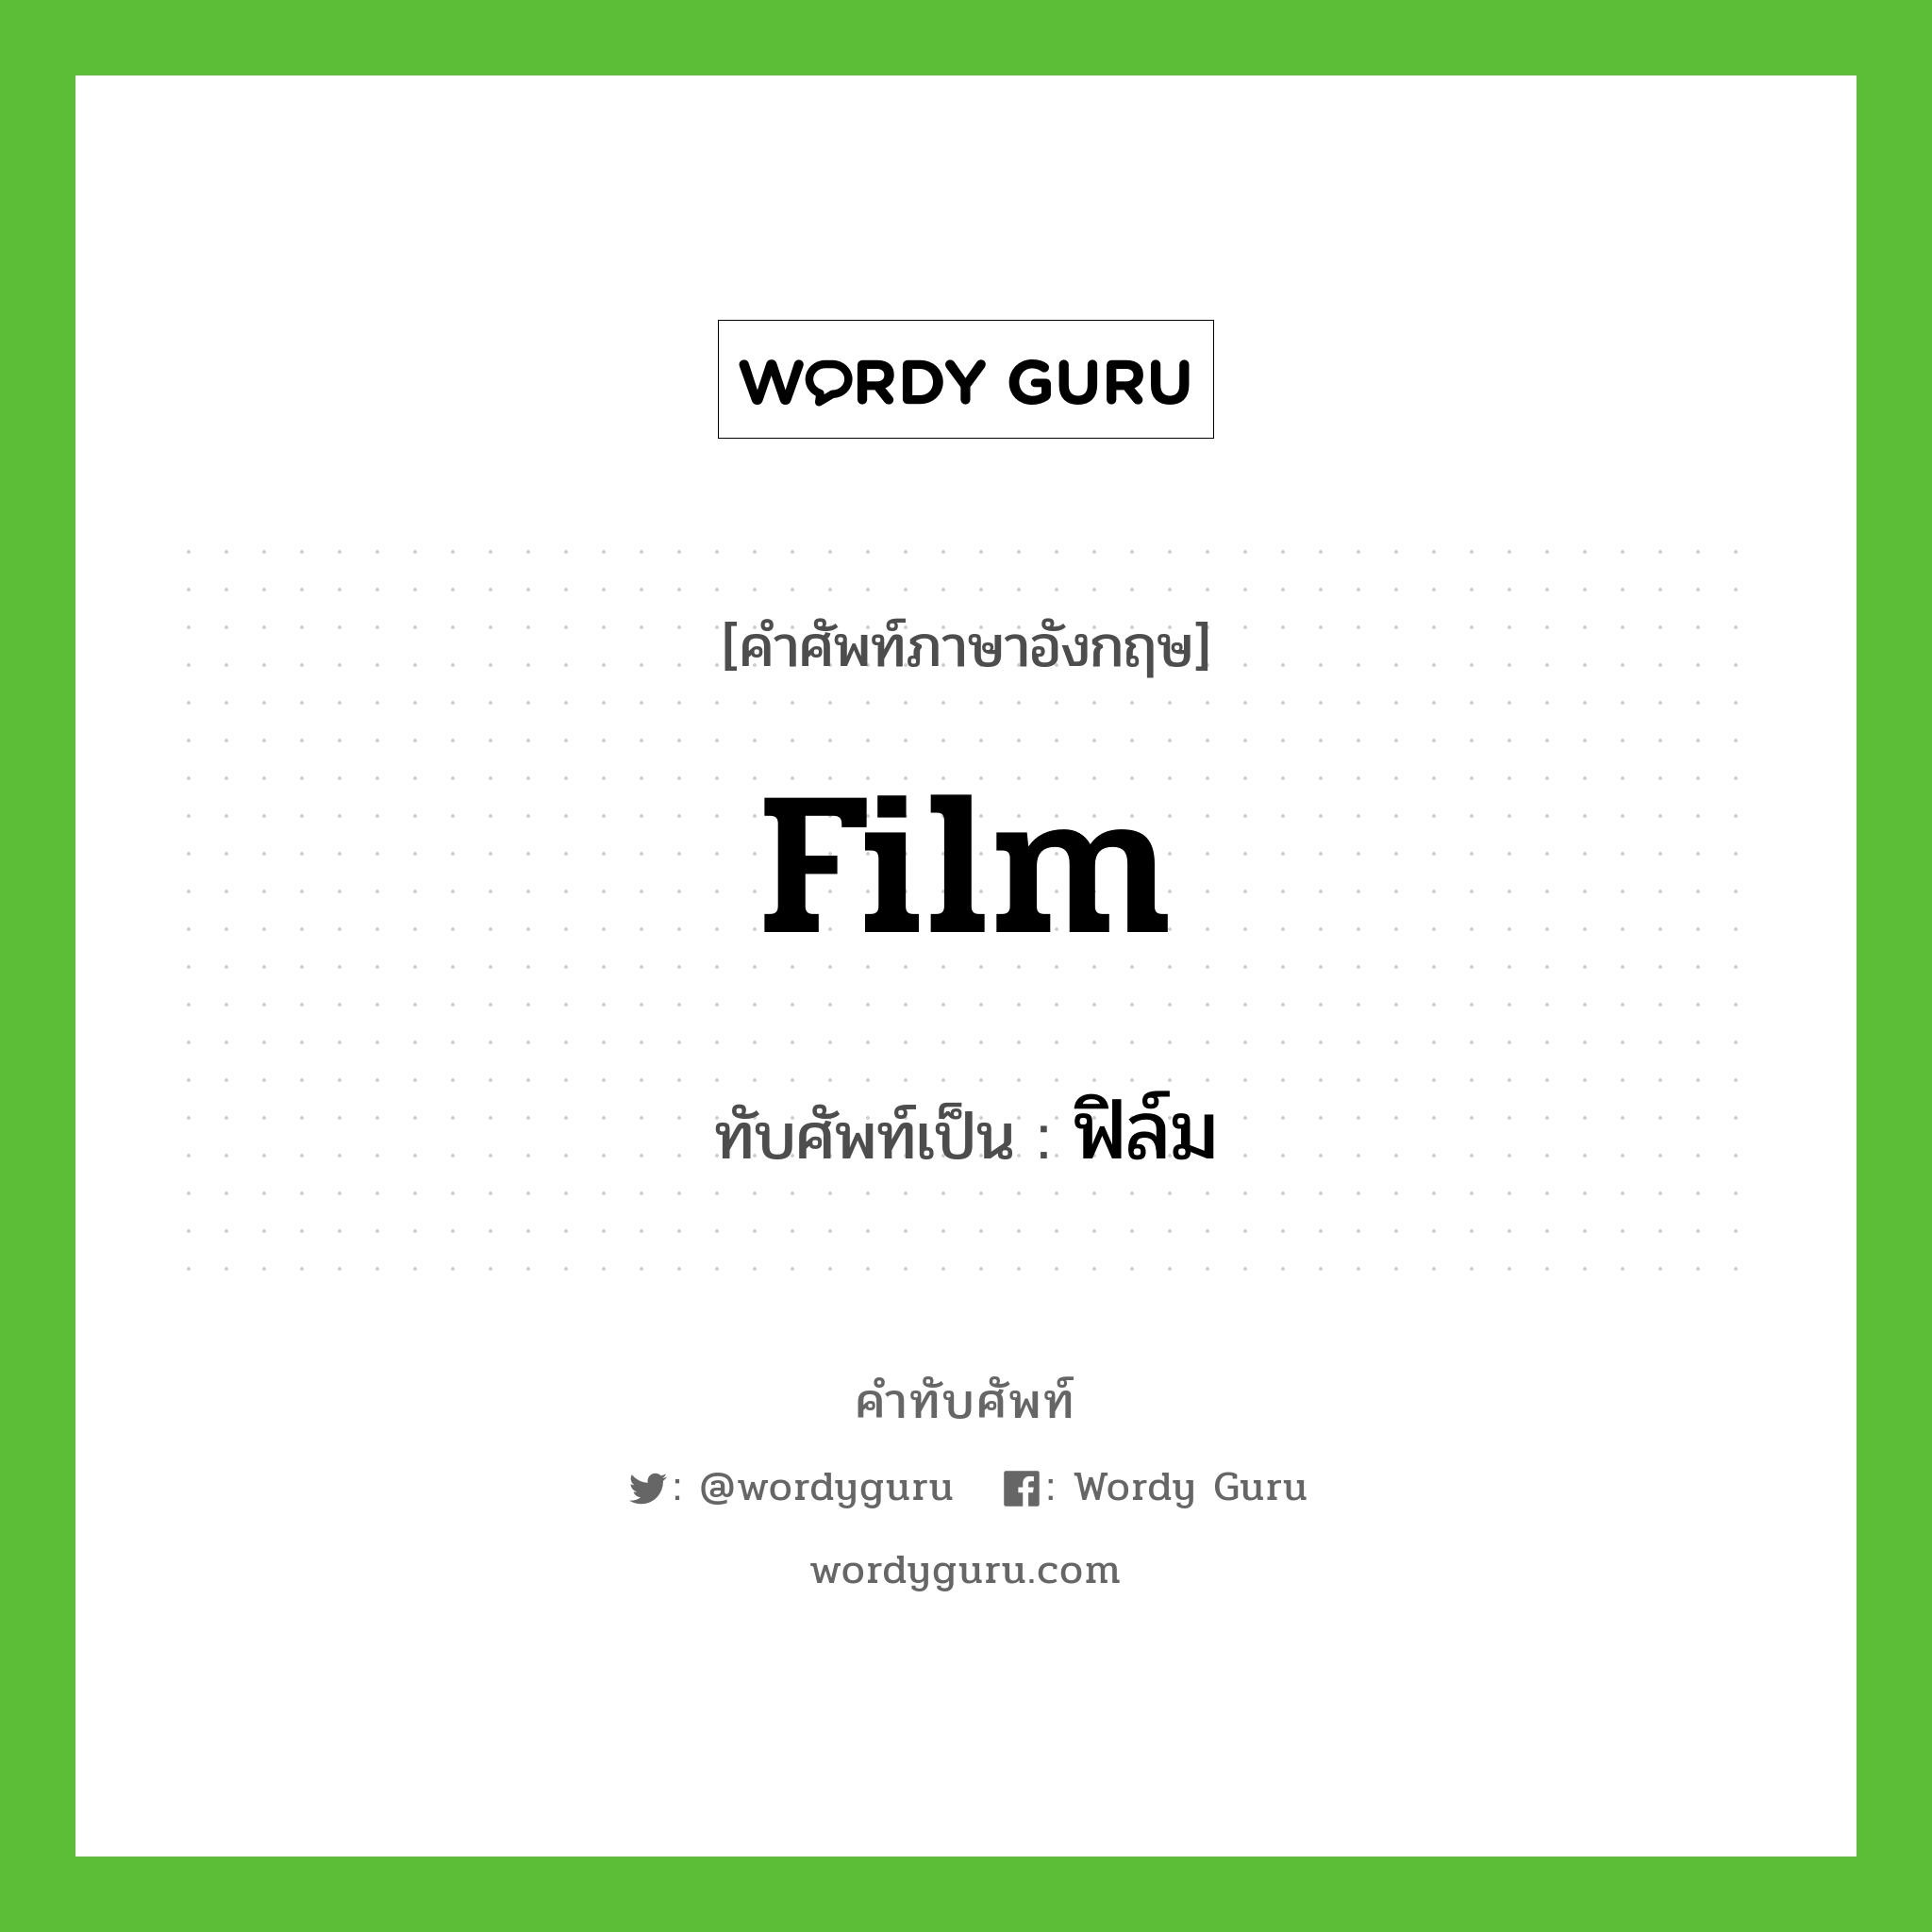 film เขียนเป็นคำไทยว่าอะไร?, คำศัพท์ภาษาอังกฤษ film ทับศัพท์เป็น ฟิล์ม